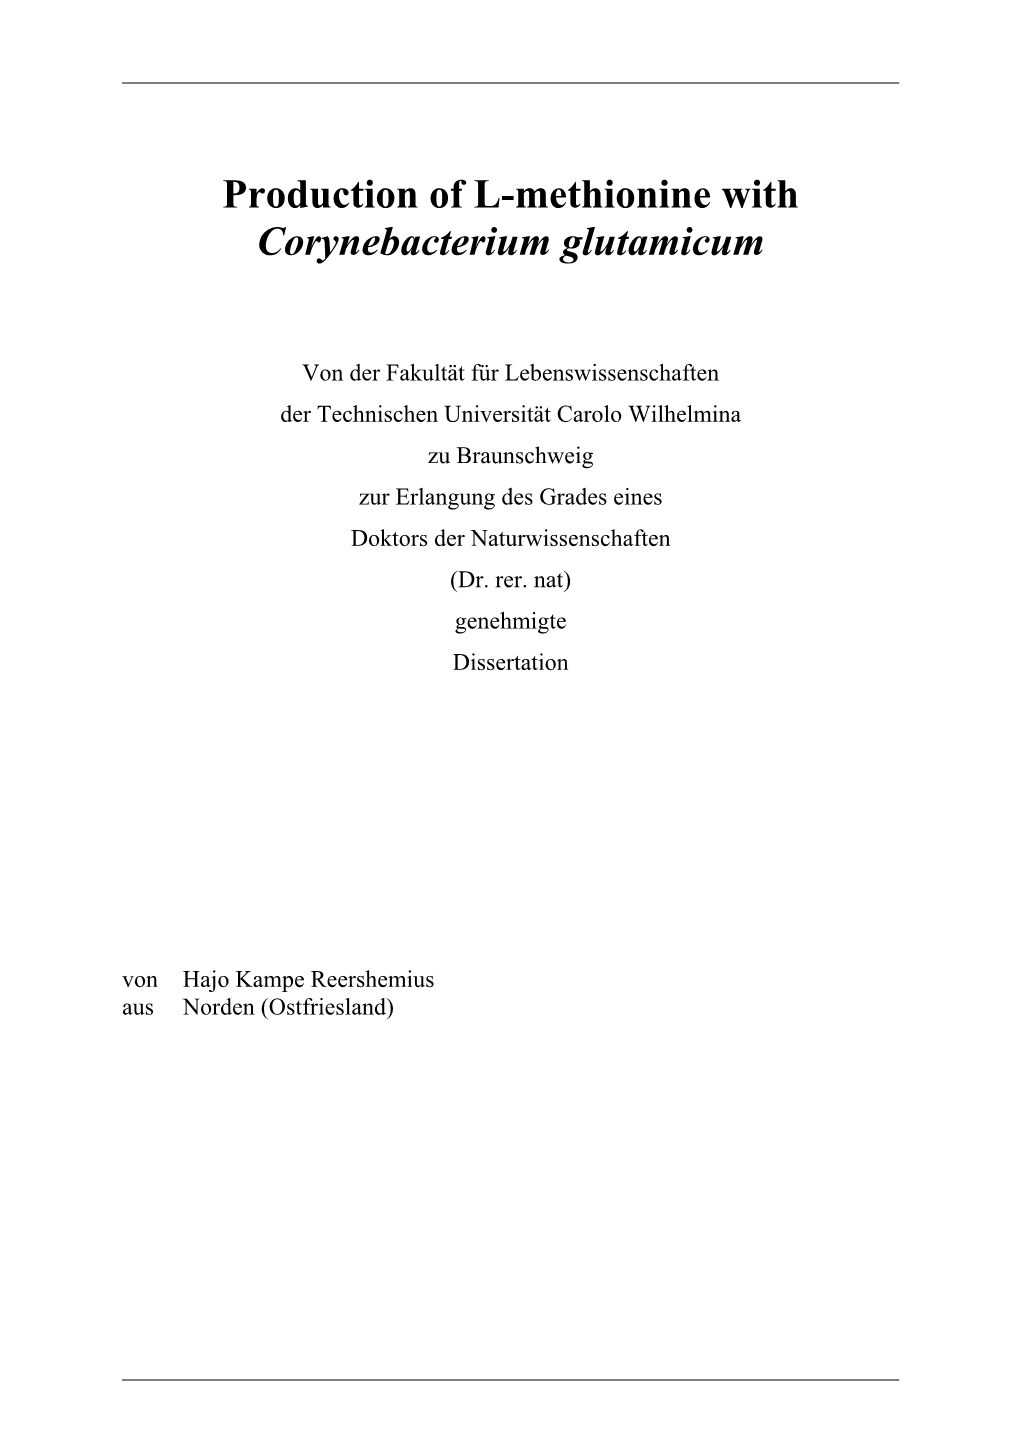 Production of L-Methionine with Corynebacterium Glutamicum